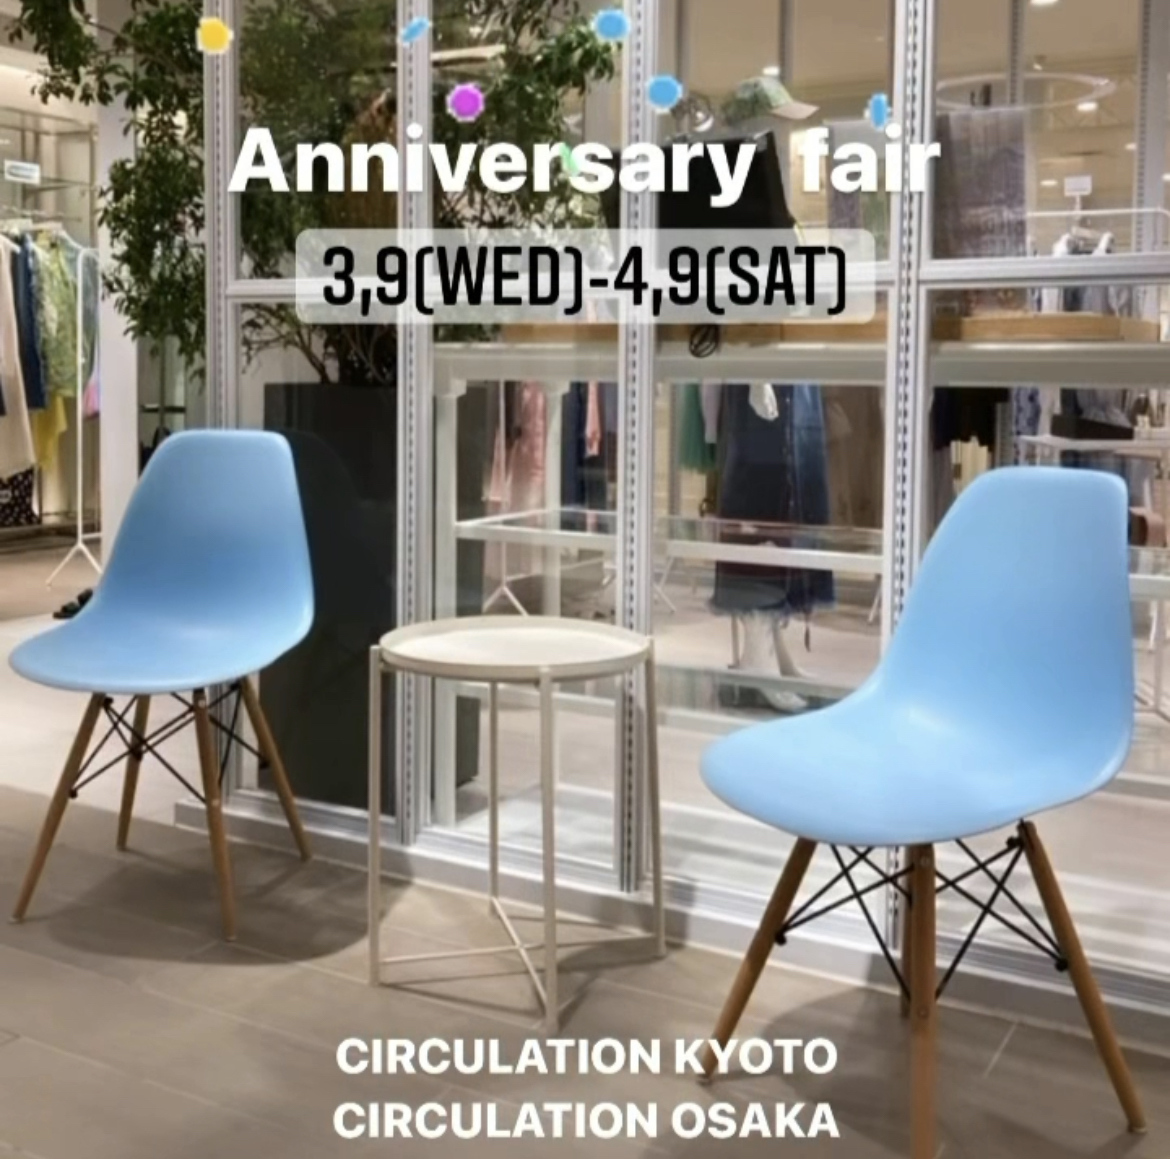 CIRCULATION Osaka,Kyoto『 1th Anniversary fair 』3,9(WED)-4,9(SAT)  株式会社サーキュレーション